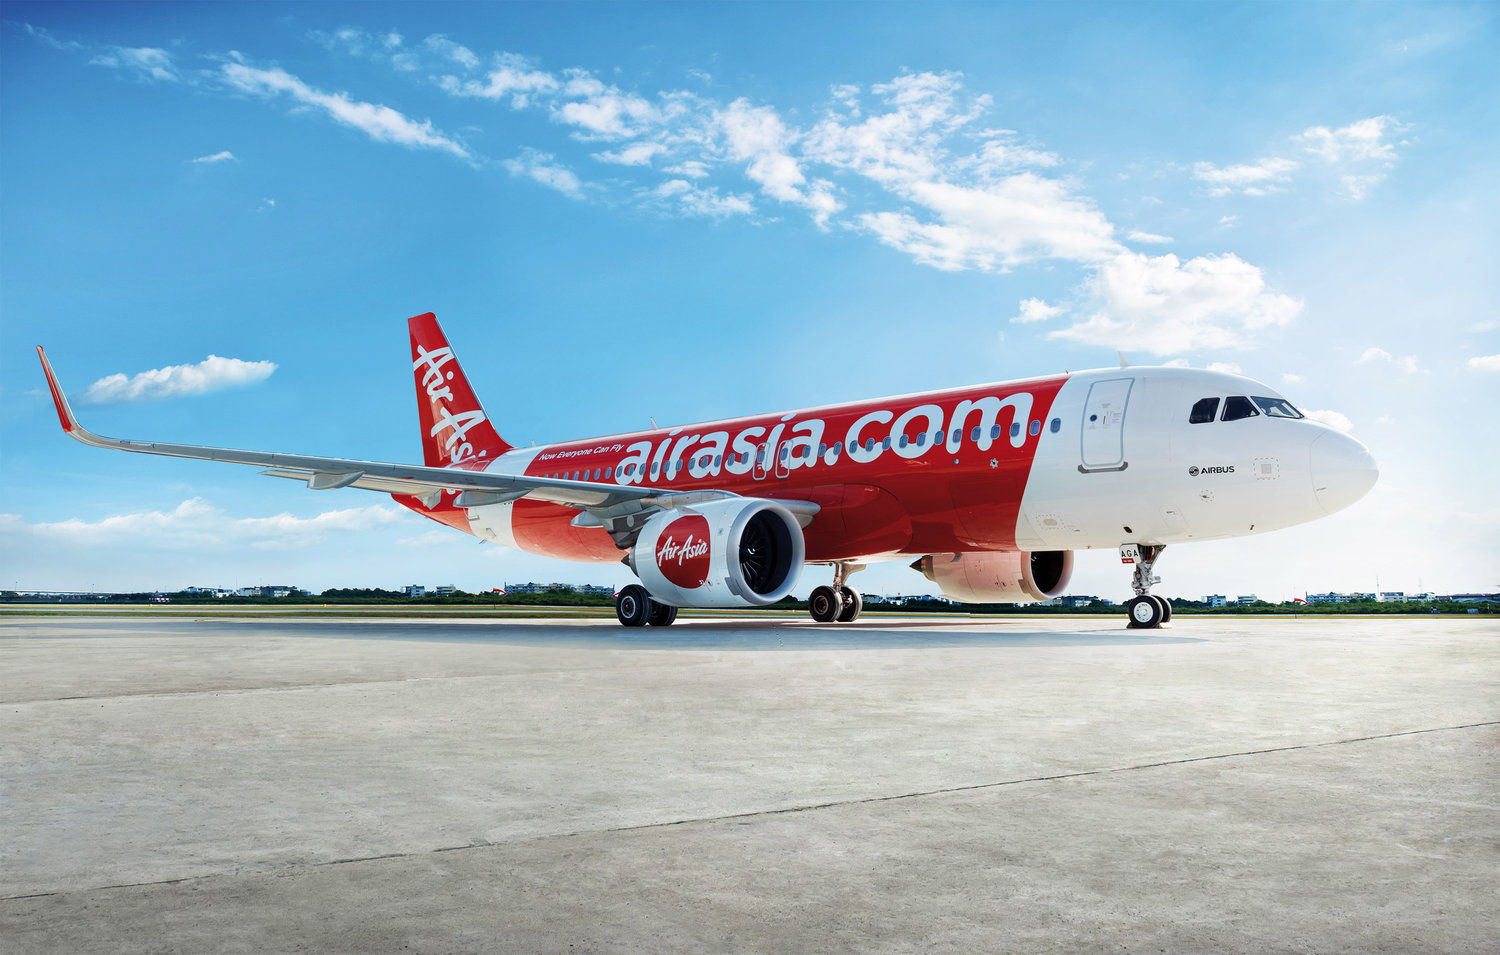 AirAsia Hadirkan Promo Kursi Gratis dan Harga Terendah untuk Rute Destinasi Internasional, Cek Mekanismenya